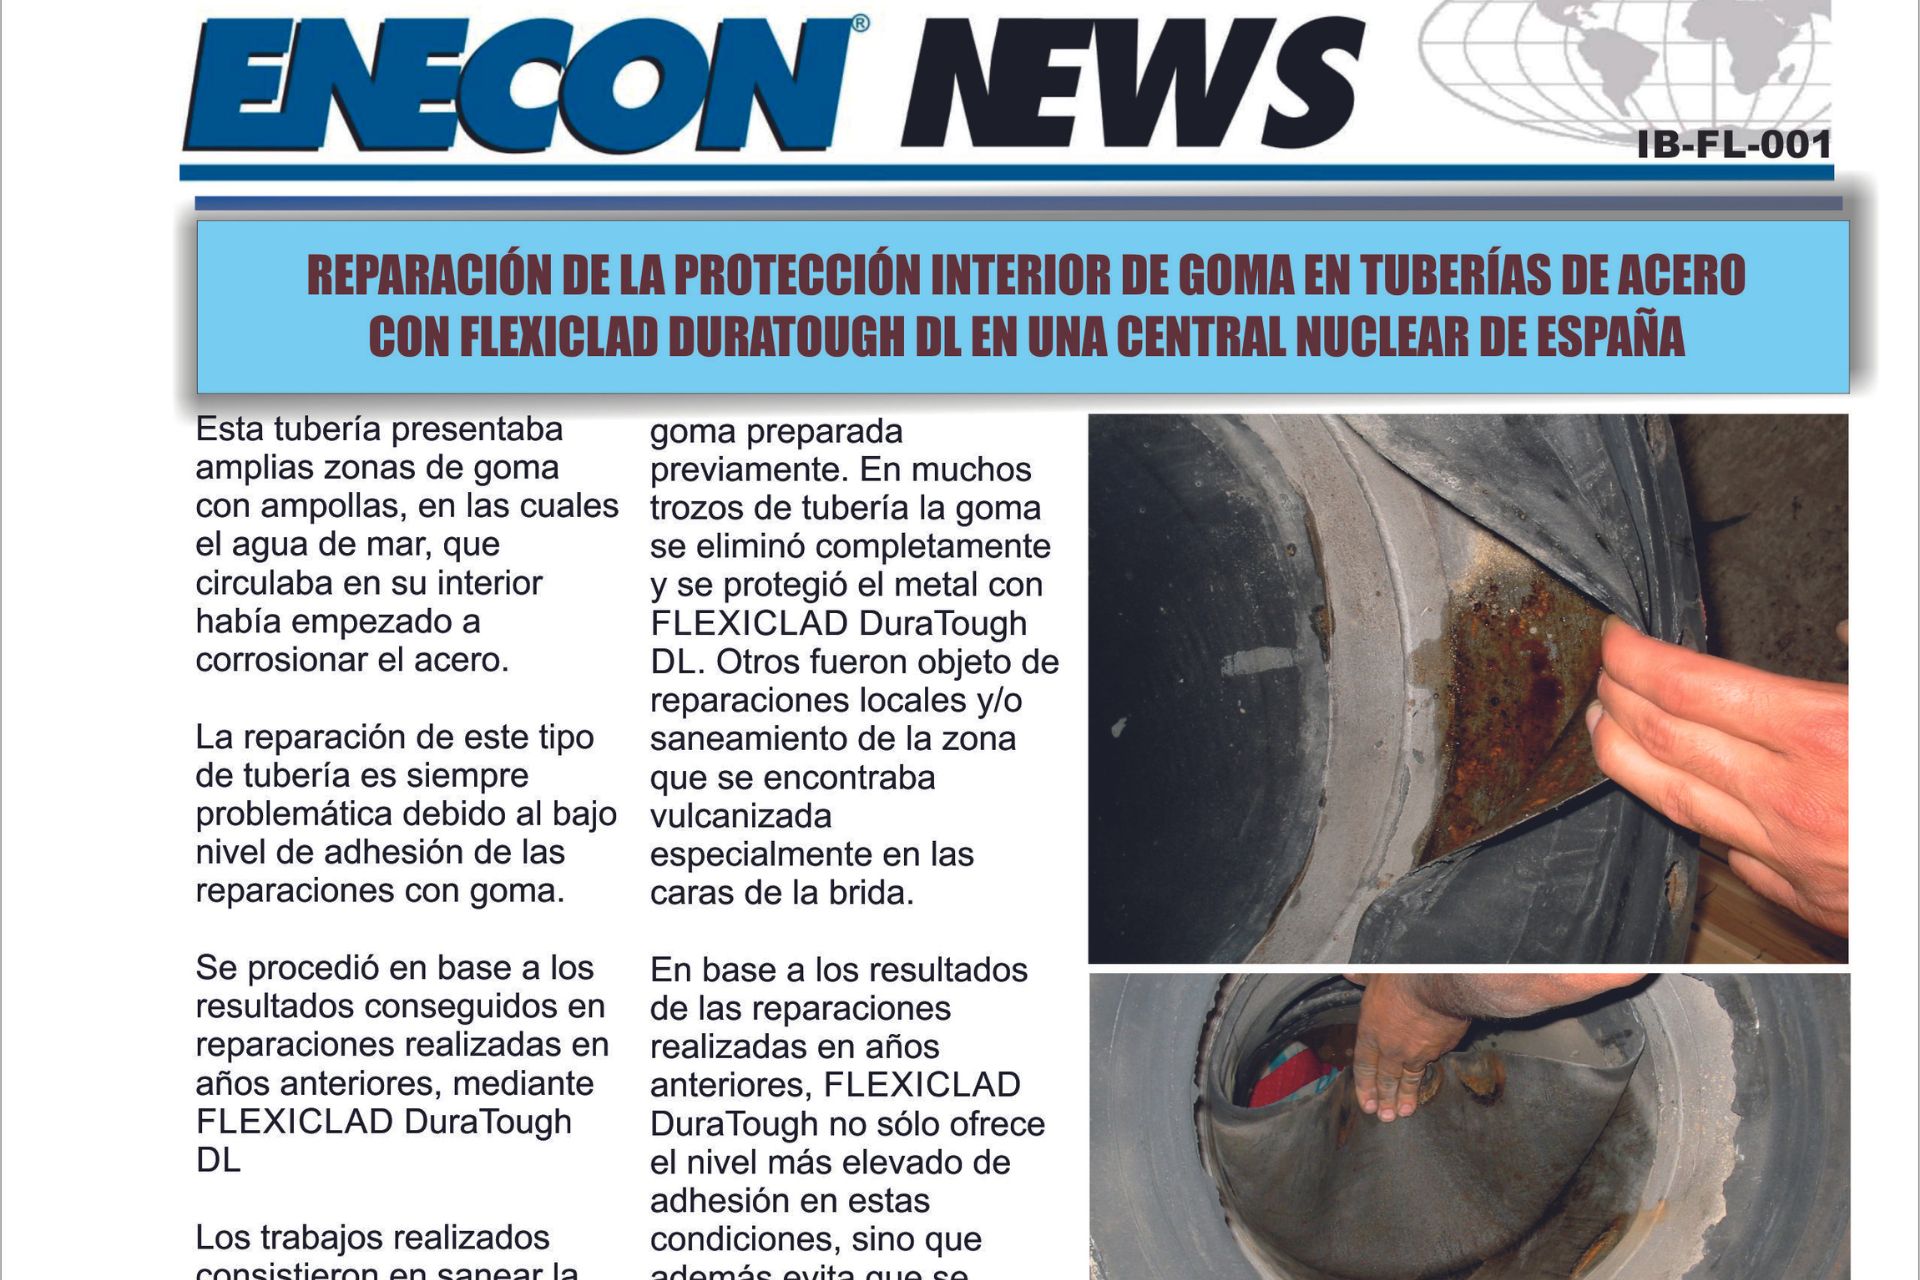 REPARACIÓN DE LA PROTECCIÓN INTERIOR DE GOMA EN TUBERÍAS DE ACERO CON FLEXICLAD DURATOUGH DL EN UNA CENTRAL NUCLEAR DE ESPAÑA